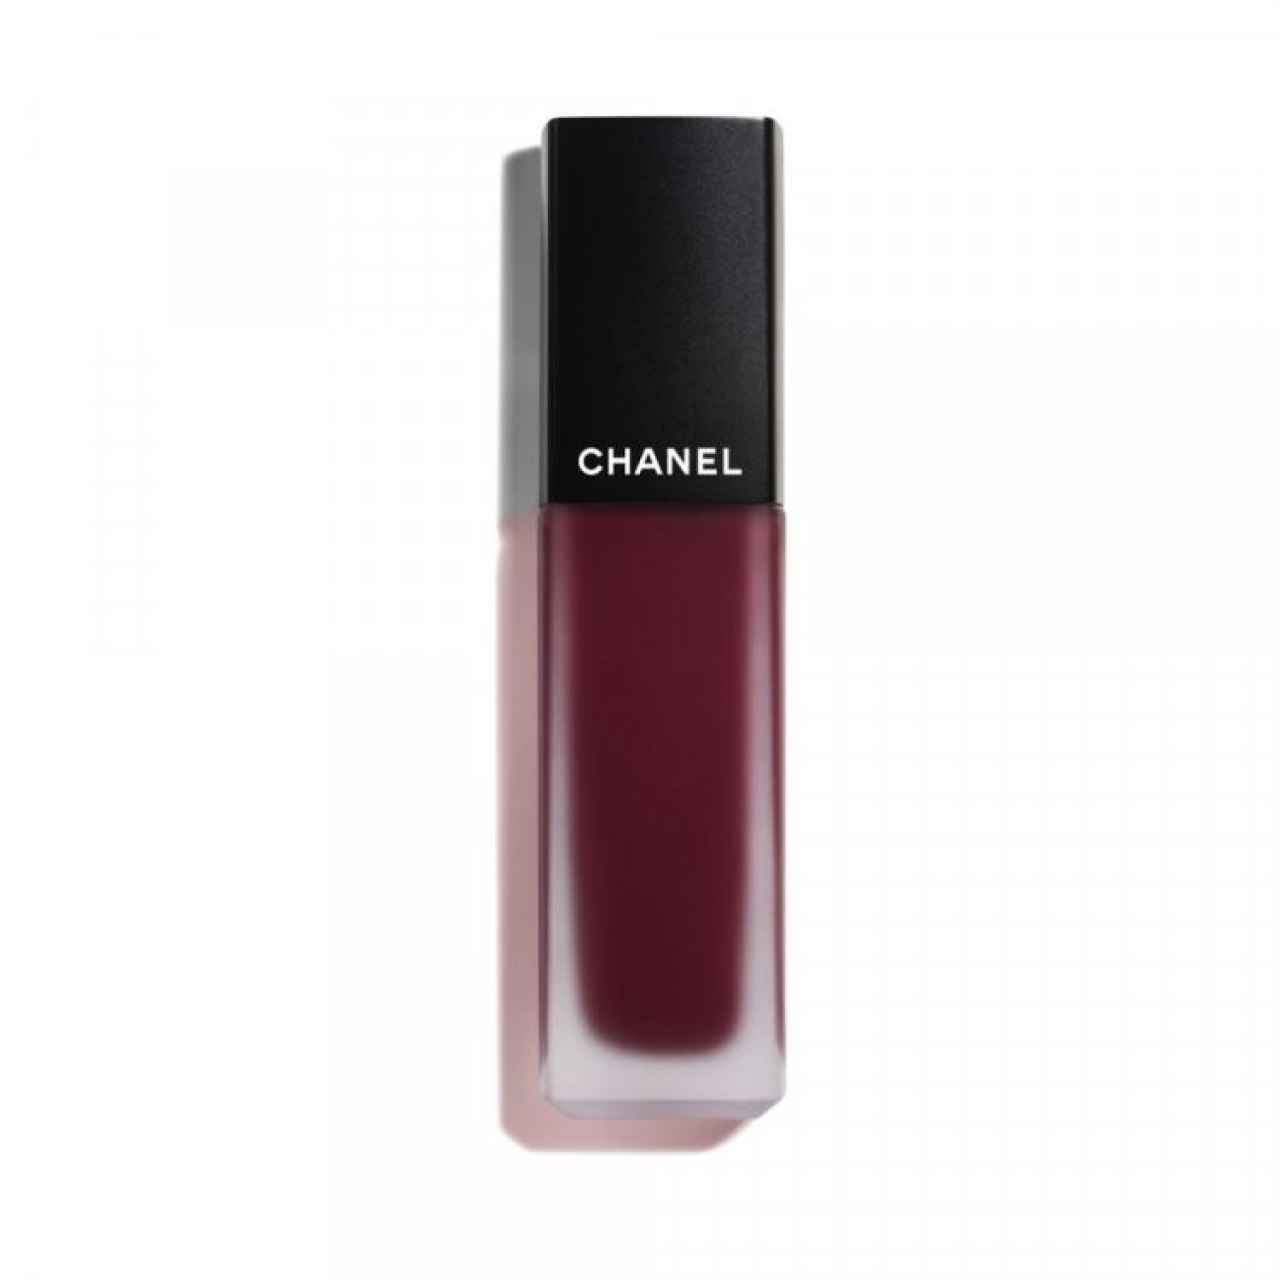 Rouge Allure Ink fusión 826, de Chanel.